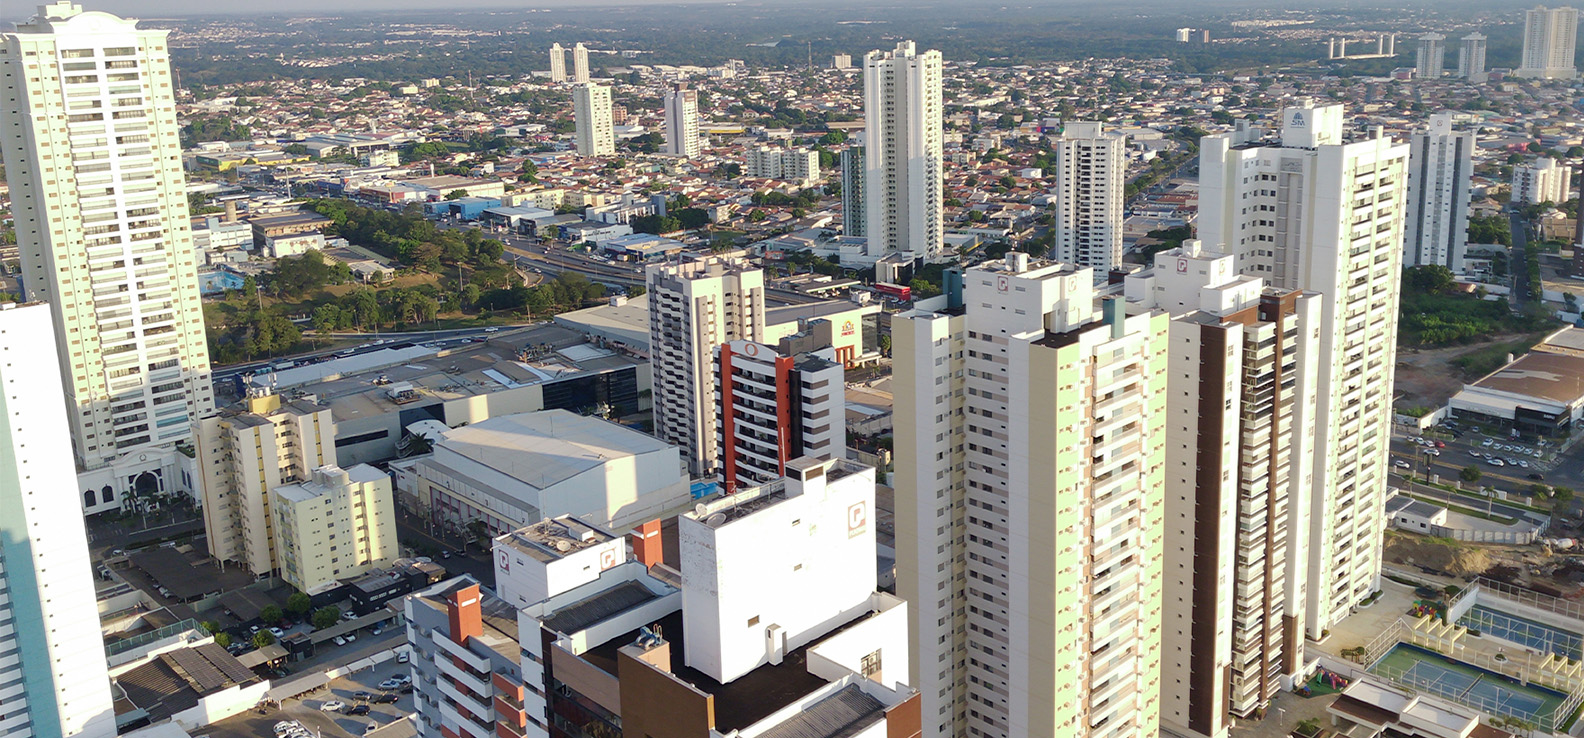 Mercado imobiliário - Cuiabá - Secovi-MT - Sindicato da Habitação - Fecomércio-MT